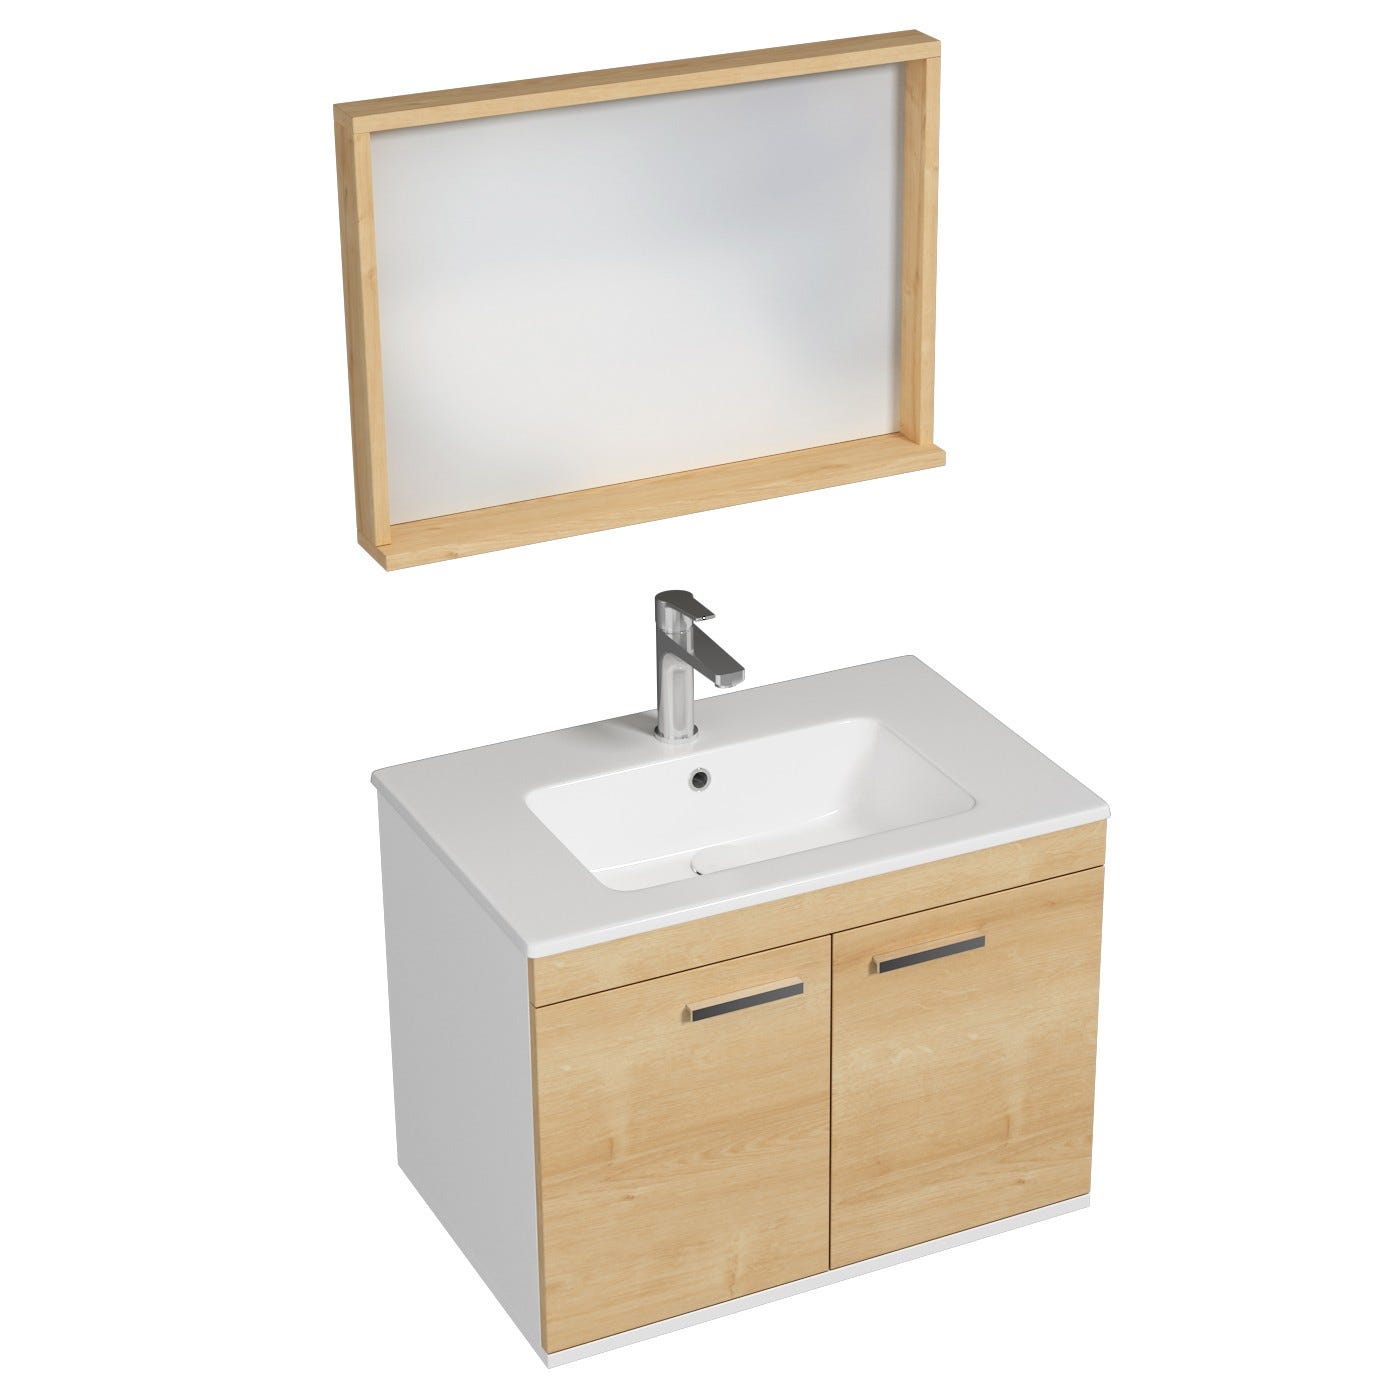 RUBITE Meuble salle de bain simple vasque 2 portes chêne clair largeur 70 cm + miroir cadre 0